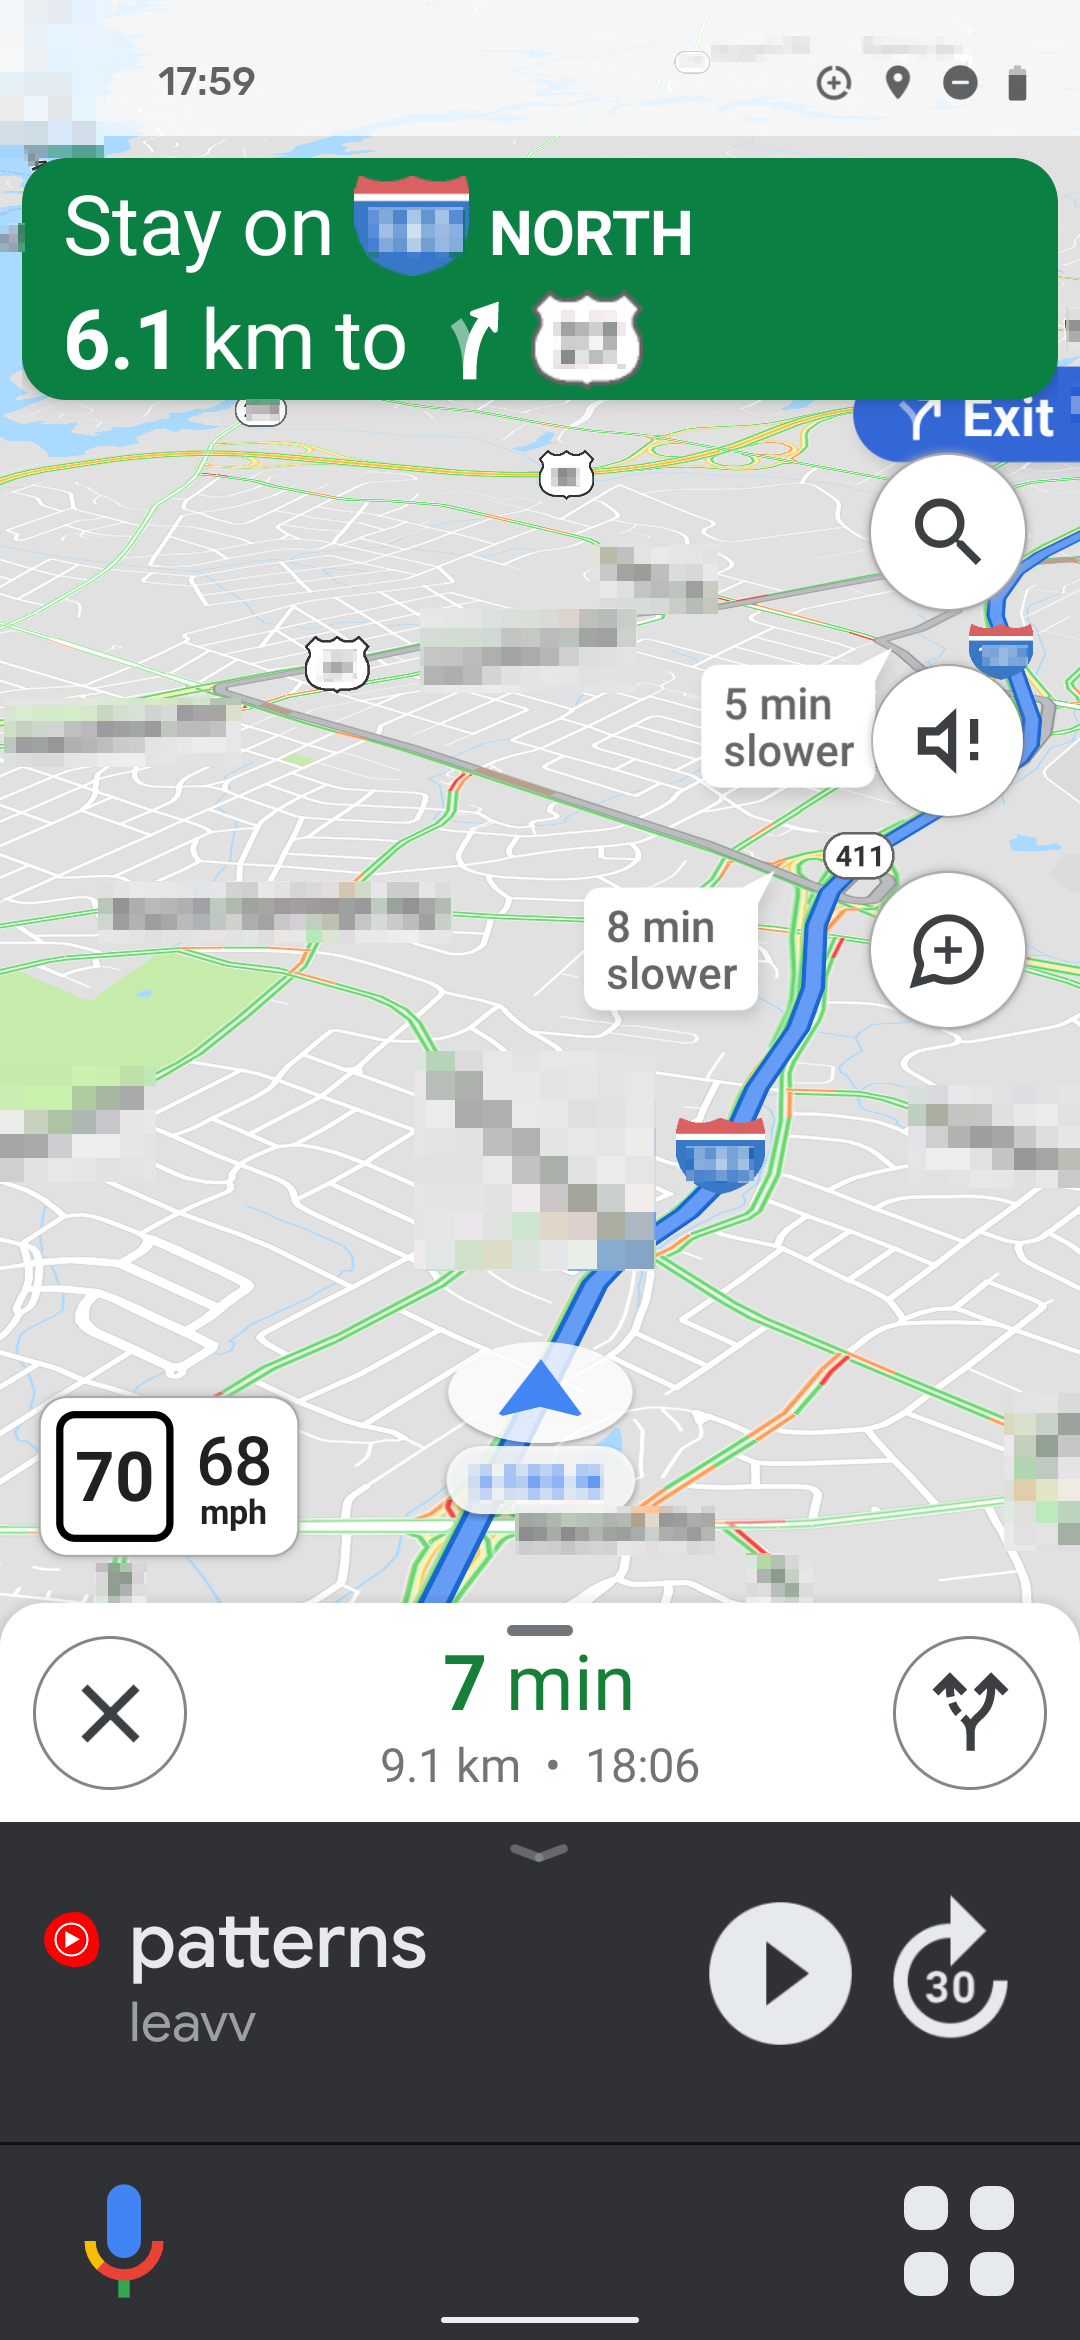 Google Maps androidpolice.com